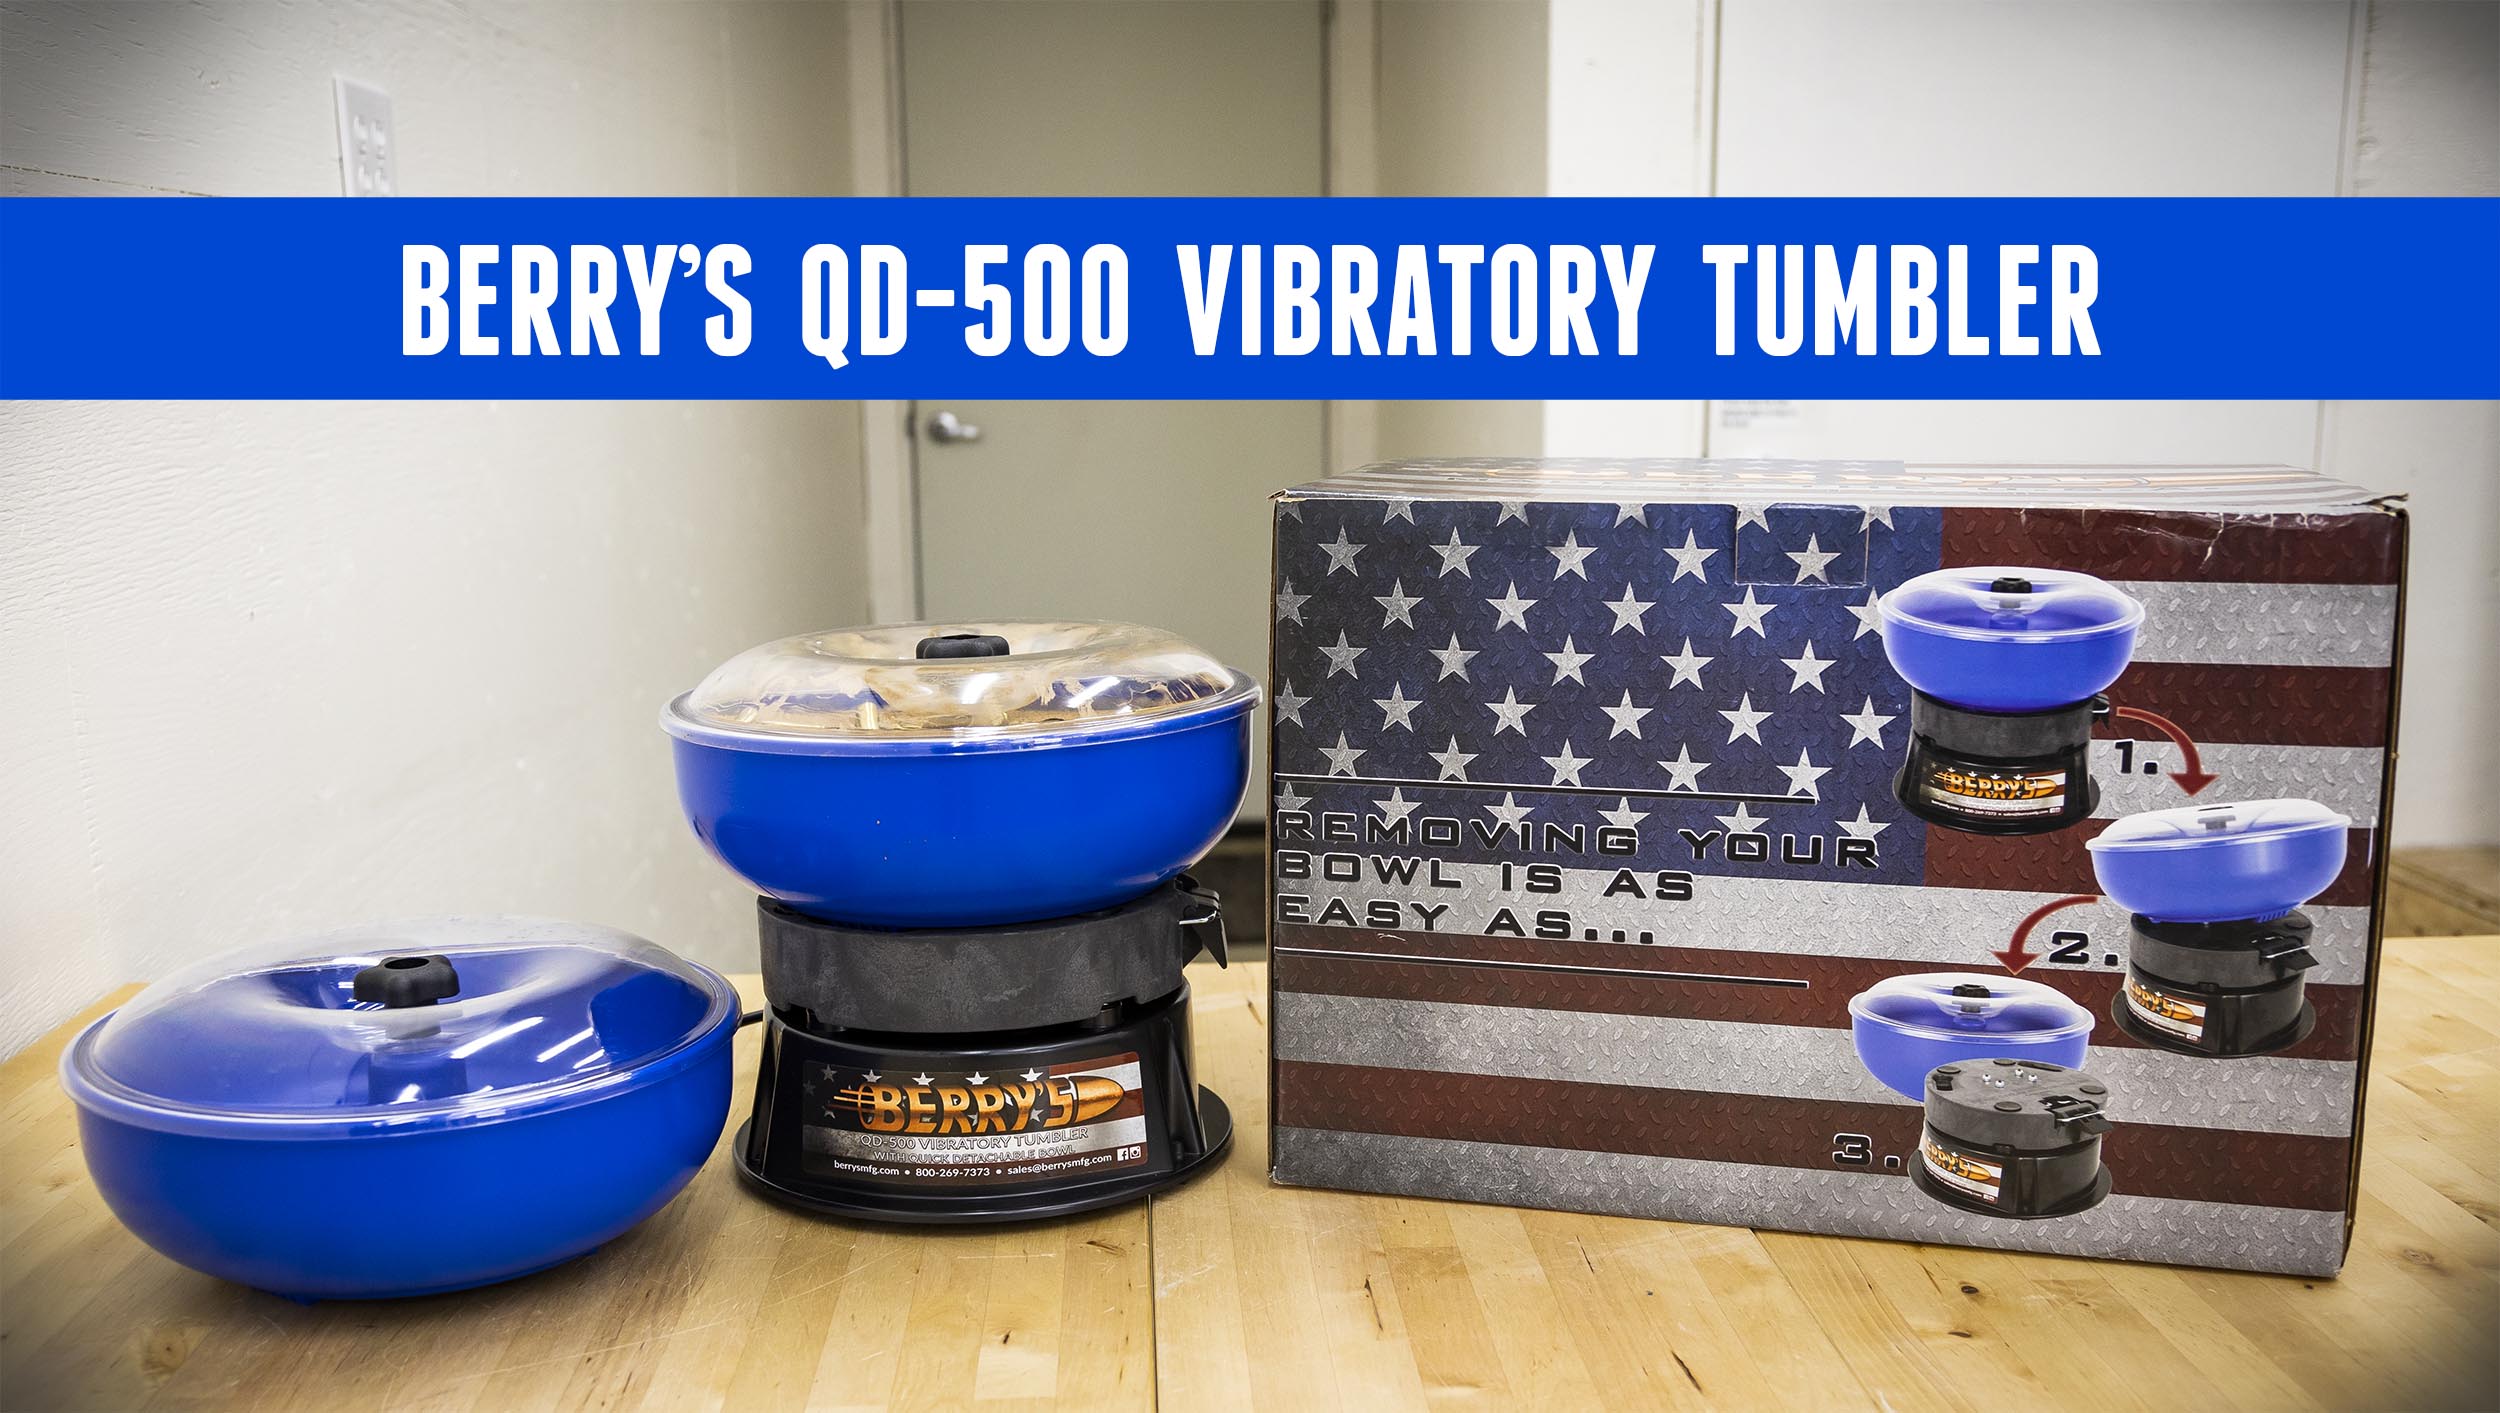 Berry's 400 Vibratory Tumbler